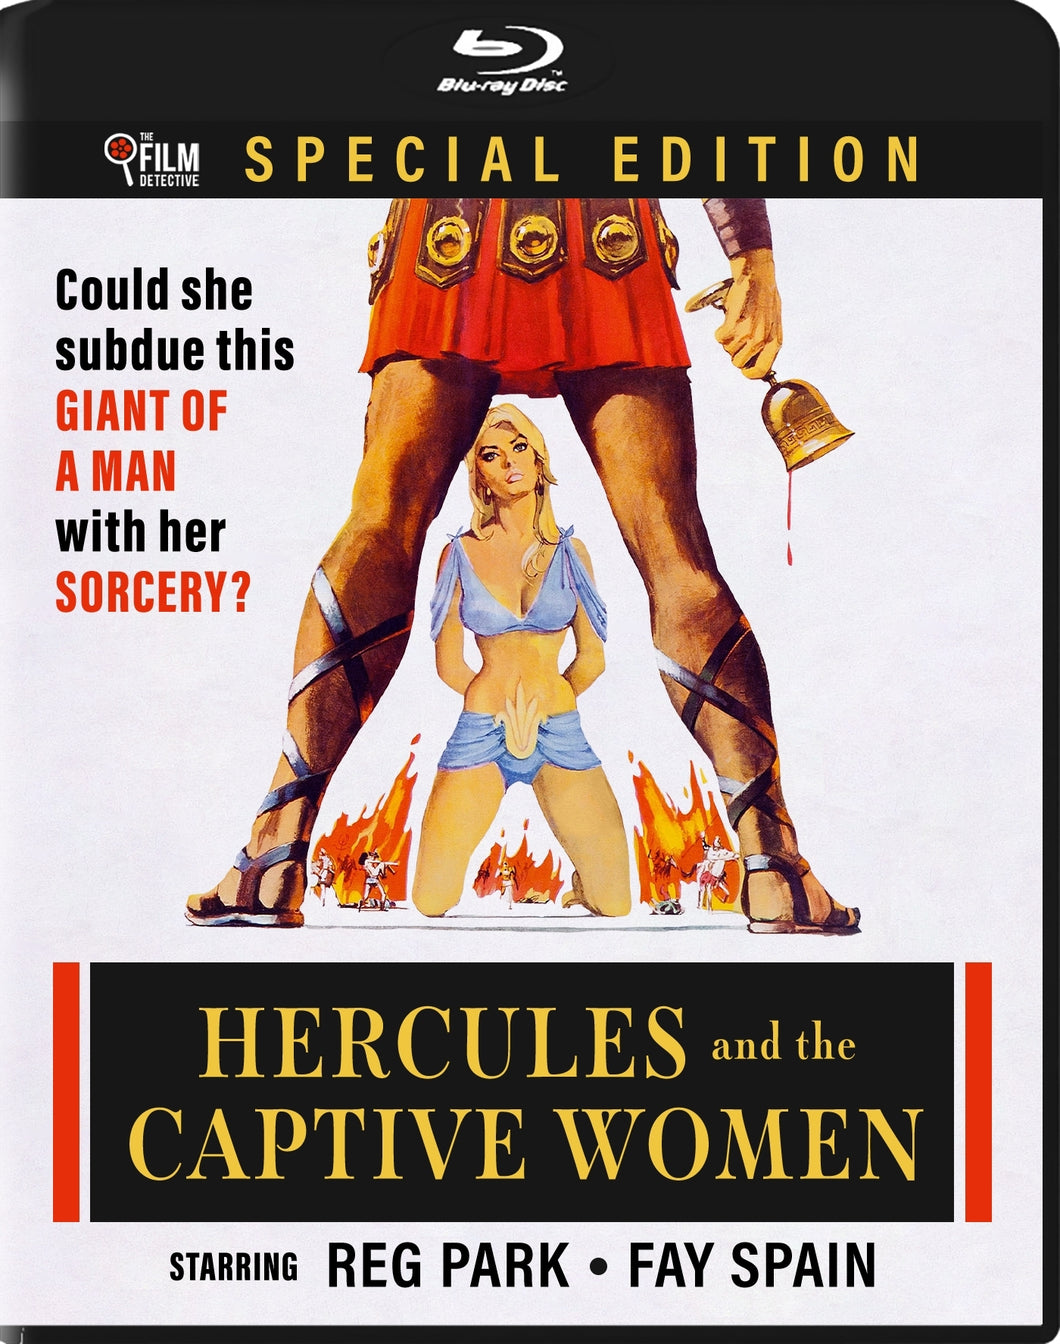 Hercules conquering Atlantis (Hercules and the Captive Women)